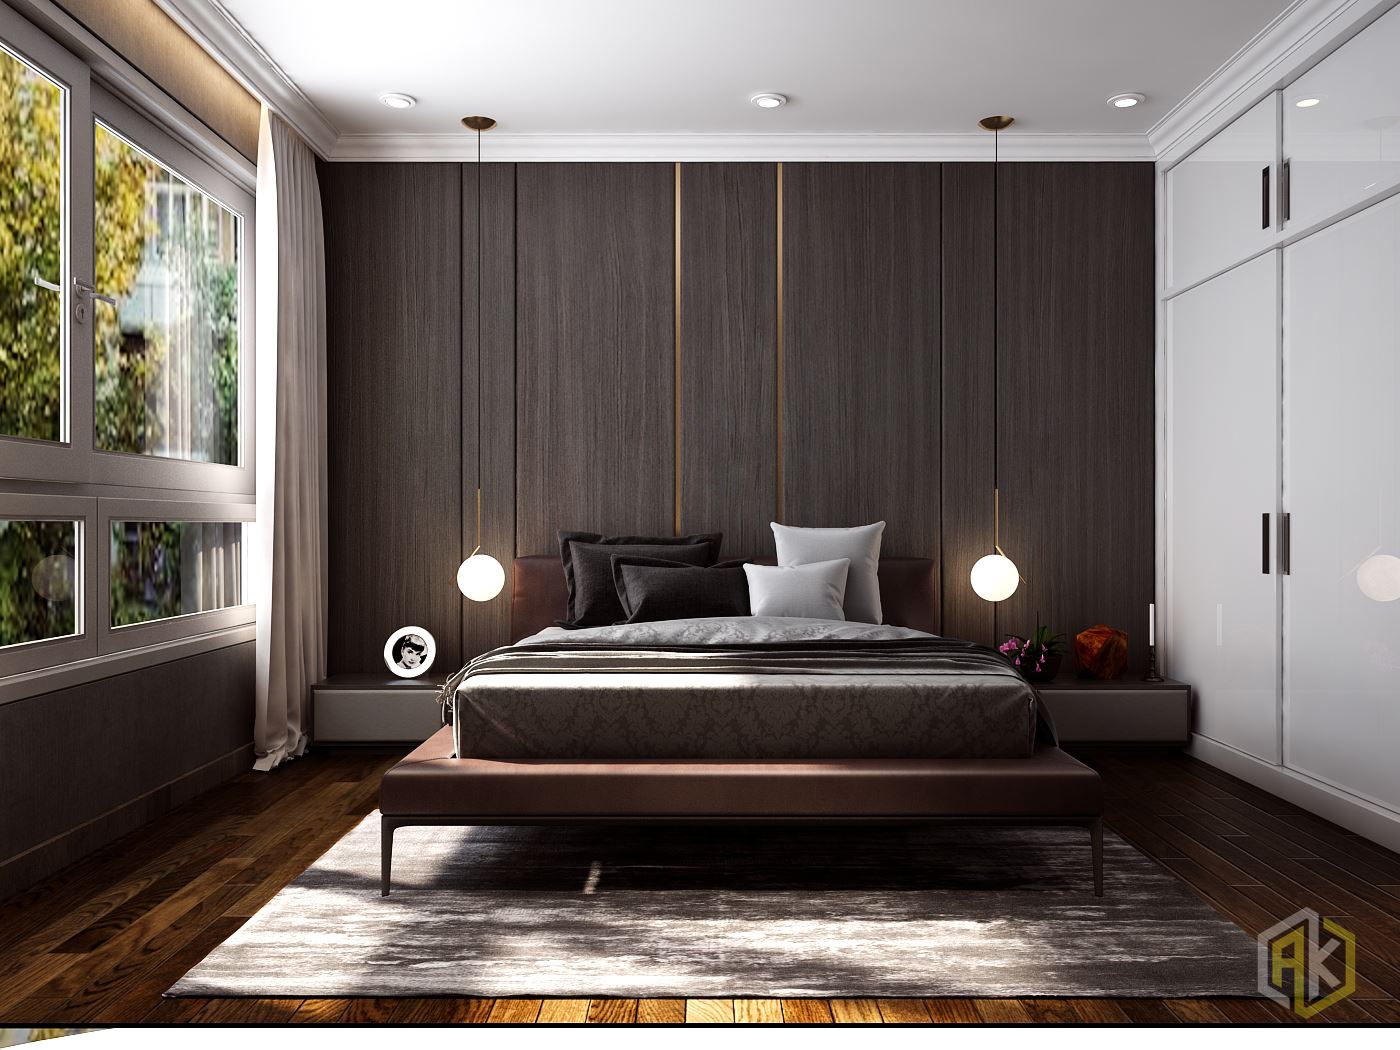 Thiết kế nội thất chung cư 70m2 Vinhomes phong cách hiện đại